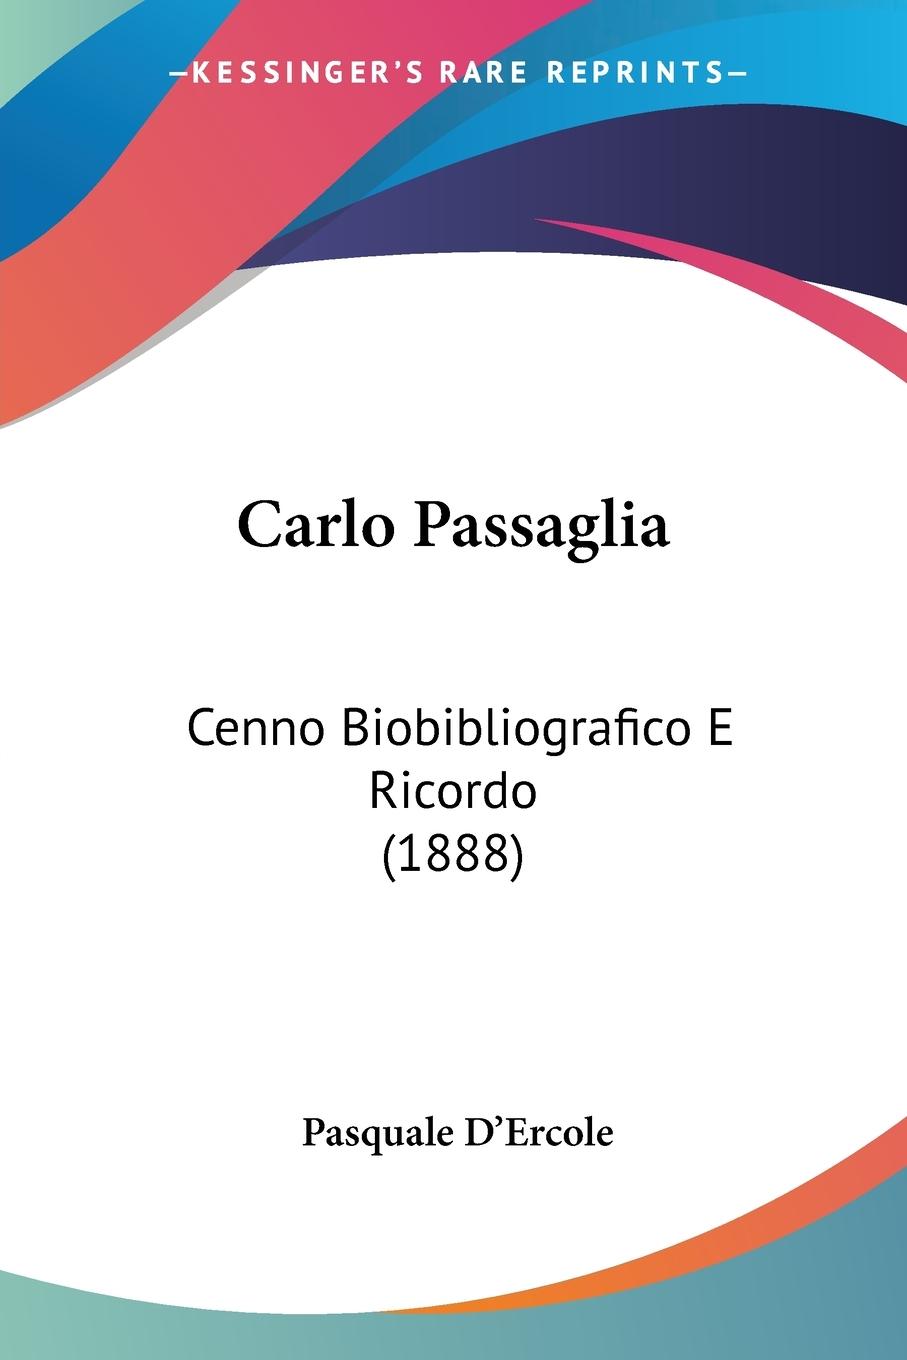 Carlo Passaglia - D Ercole, Pasquale